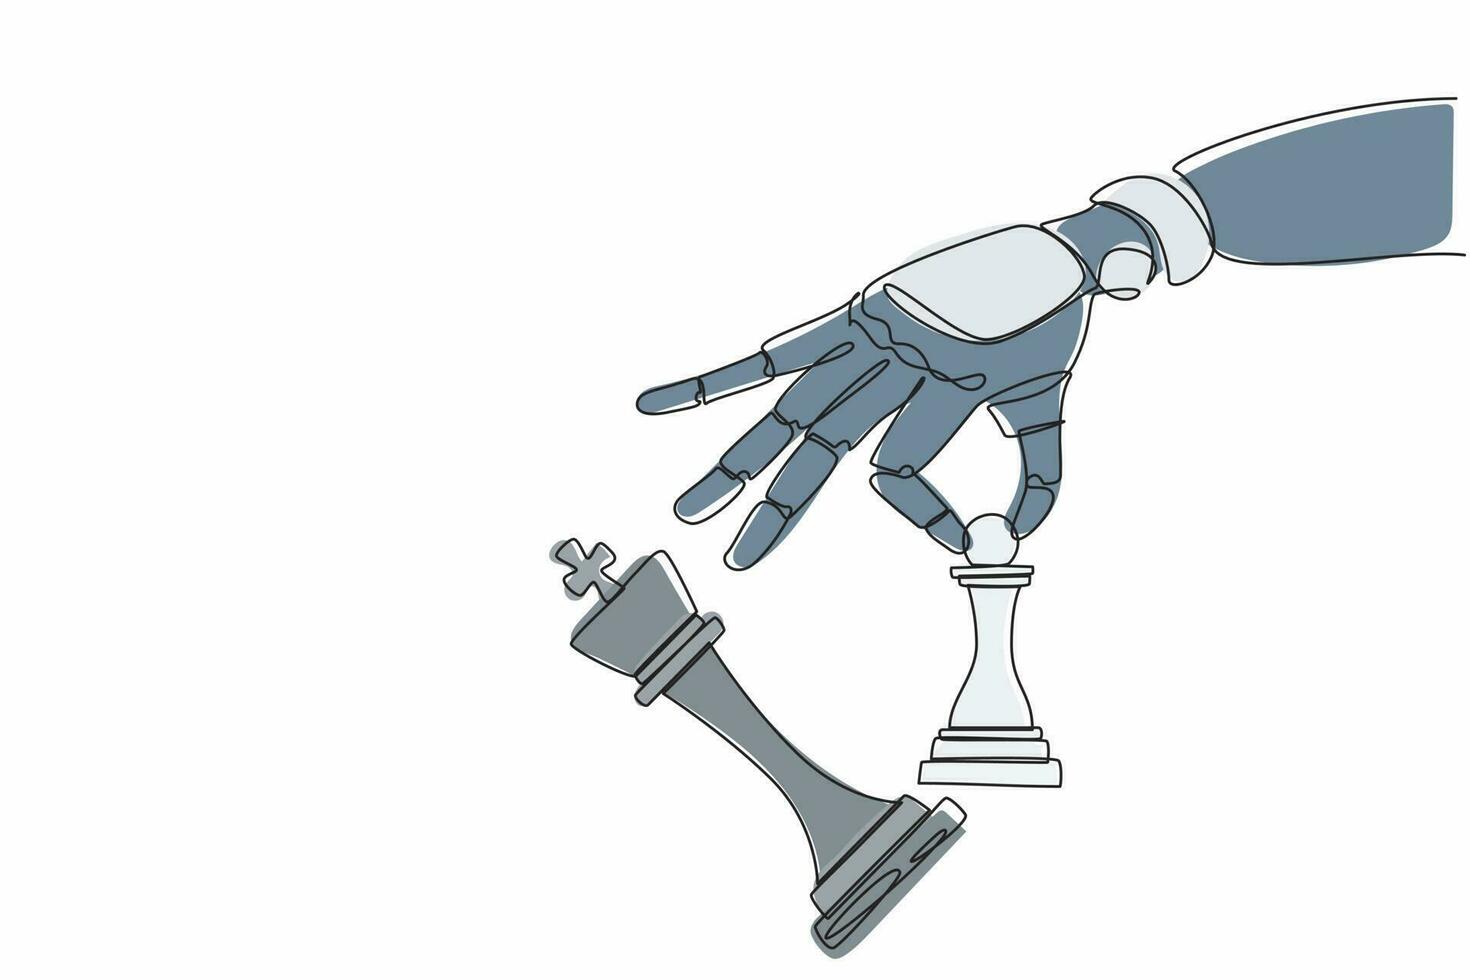 kontinuierliche einzeilige zeichnung roboterhand, die schachbauer hält, um schachkönig zu besiegen. Schachmatt. humanoider Roboter kybernetischer Organismus. zukünftiges robotikentwicklungskonzept. einzeilige Design-Vektorgrafik vektor